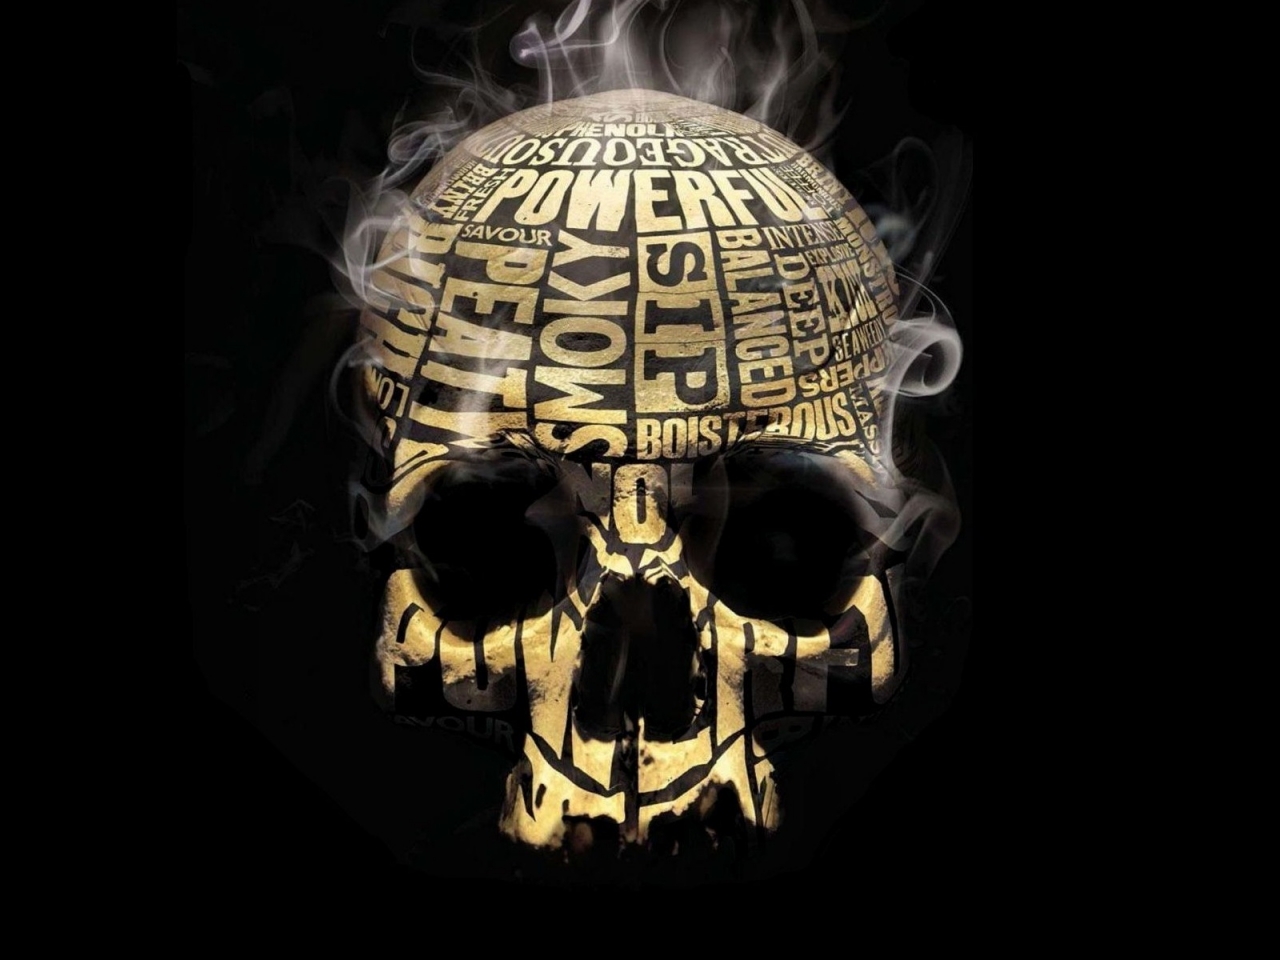 Skull Smoker for 1280 x 960 resolution